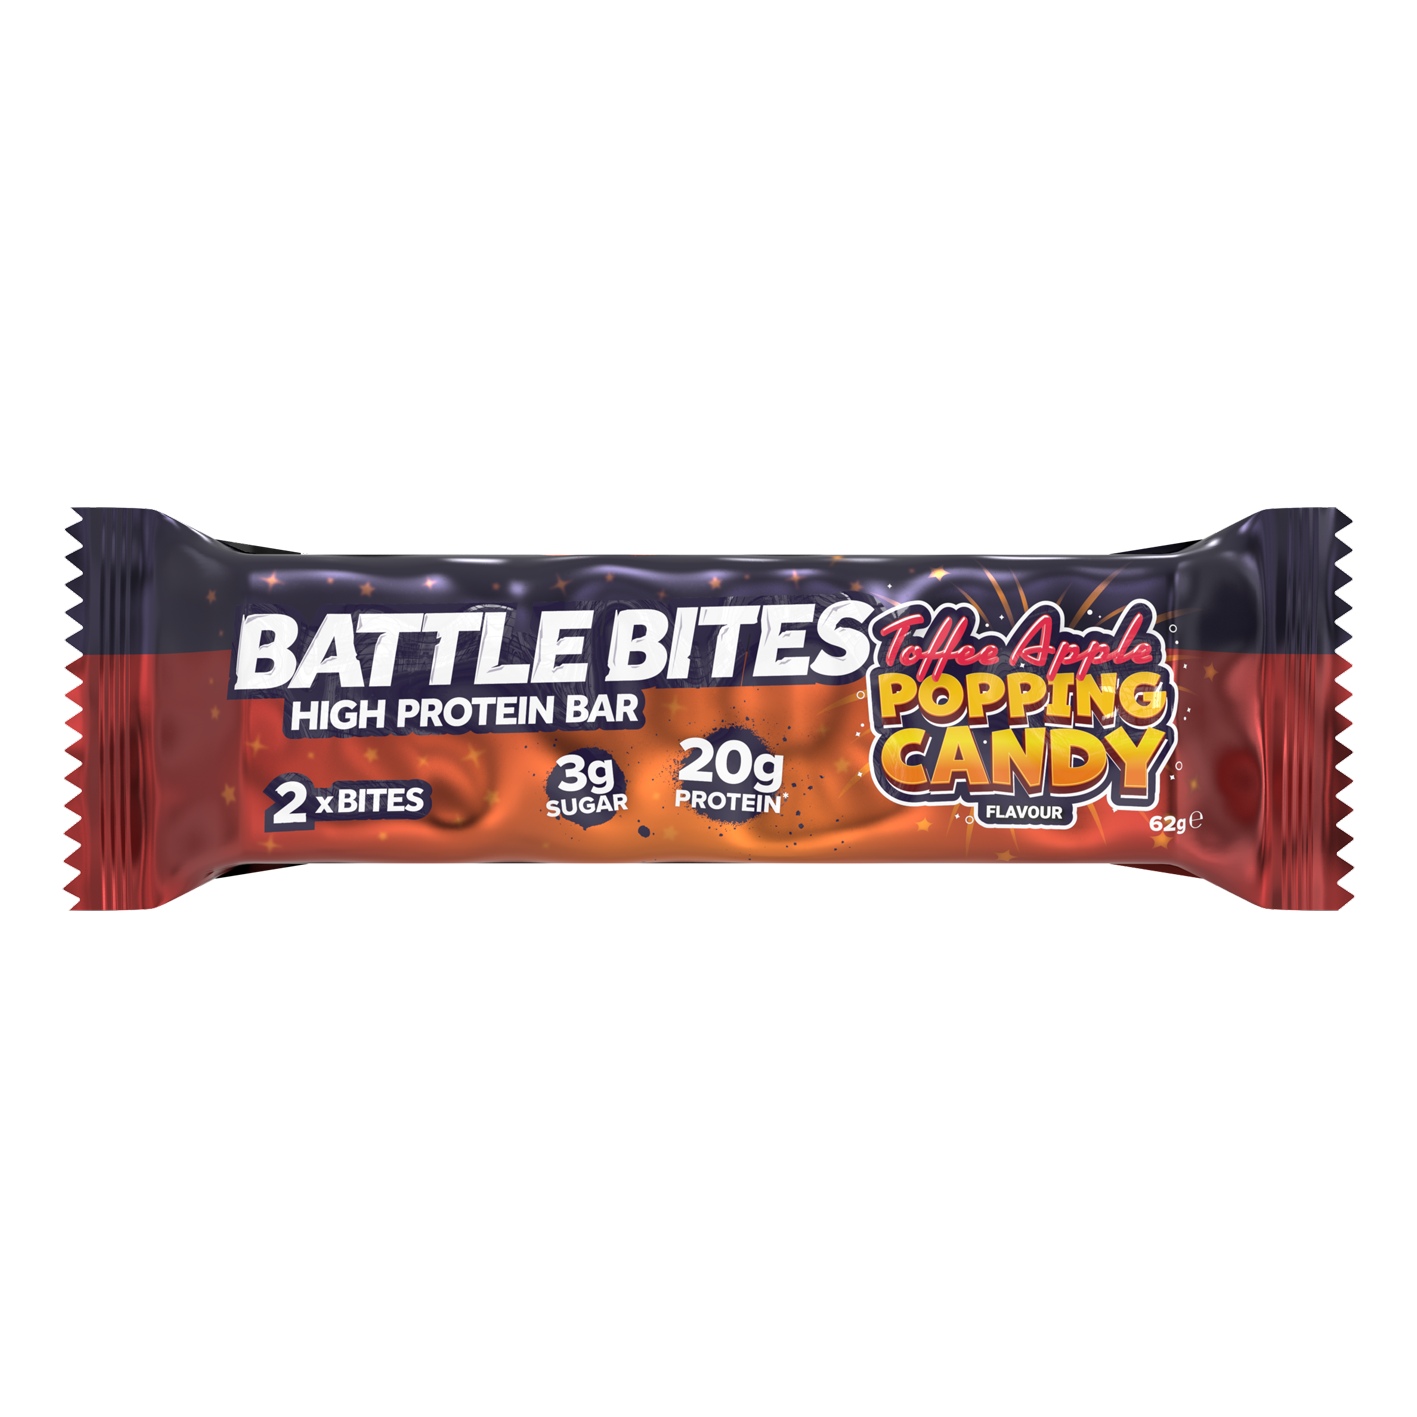 Battle Bites Popping Candy 62g – Preis pro Packung mit 12 Stück